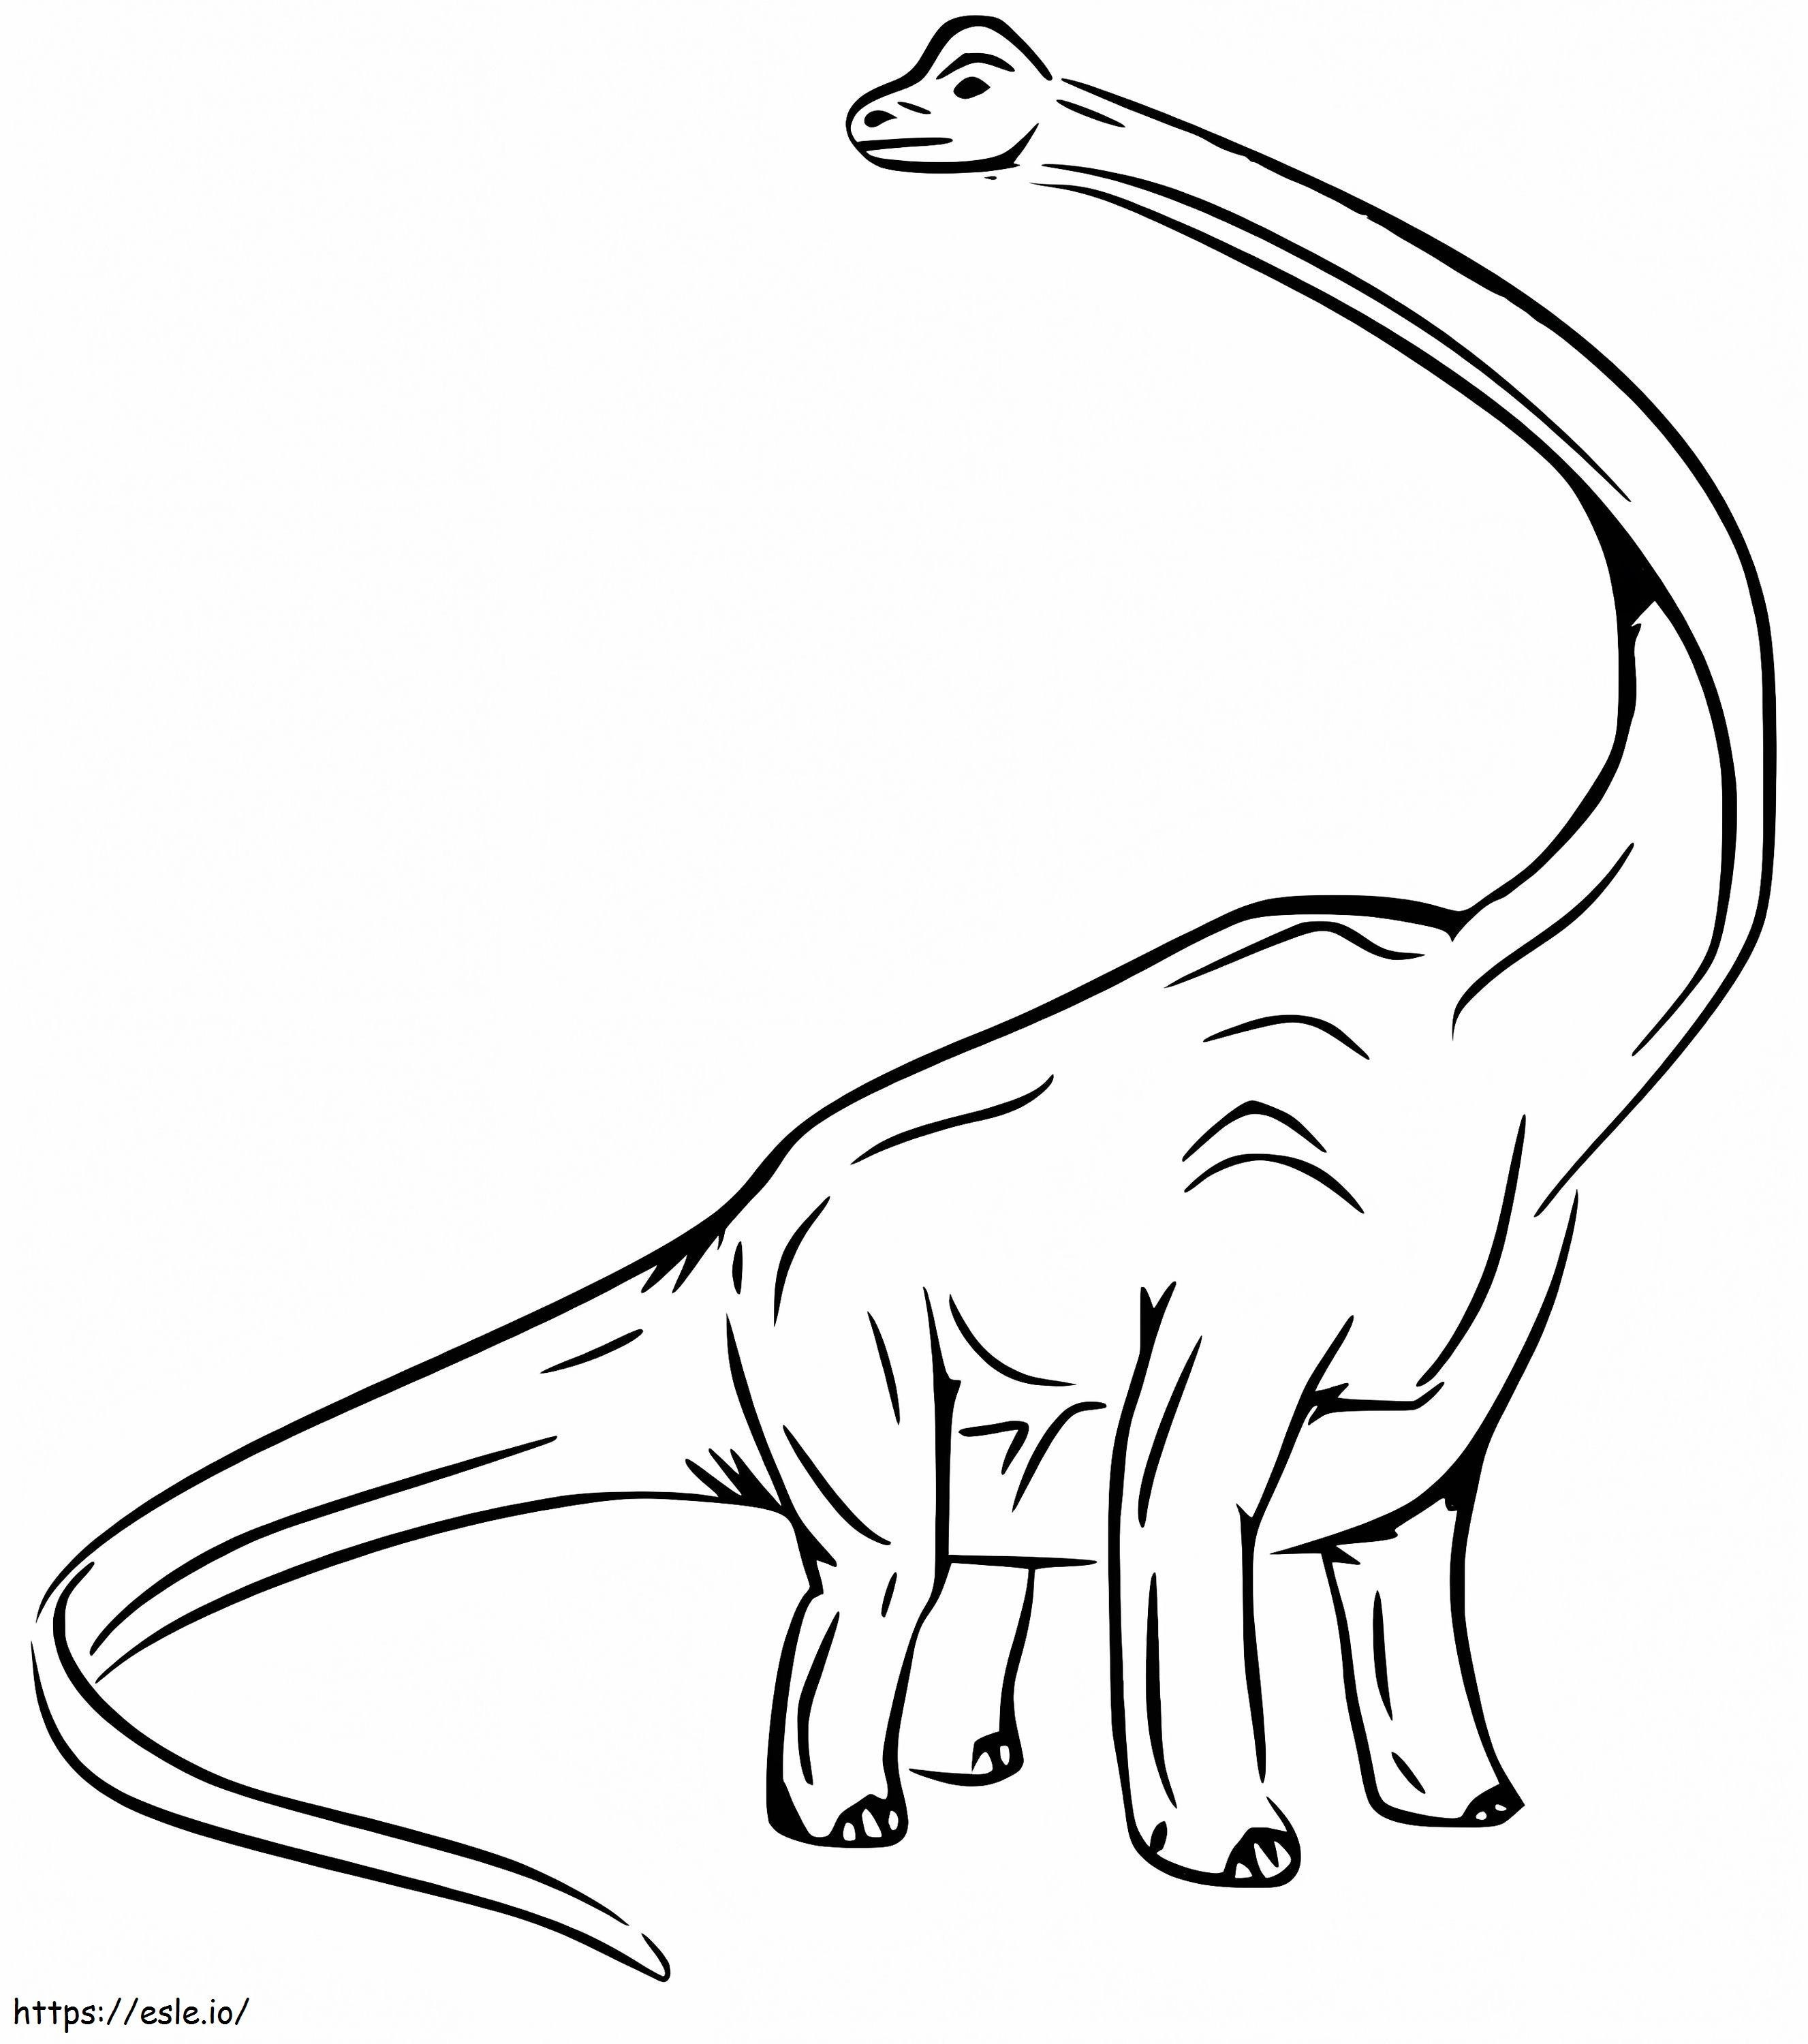 Büyük Brachiosaurus boyama